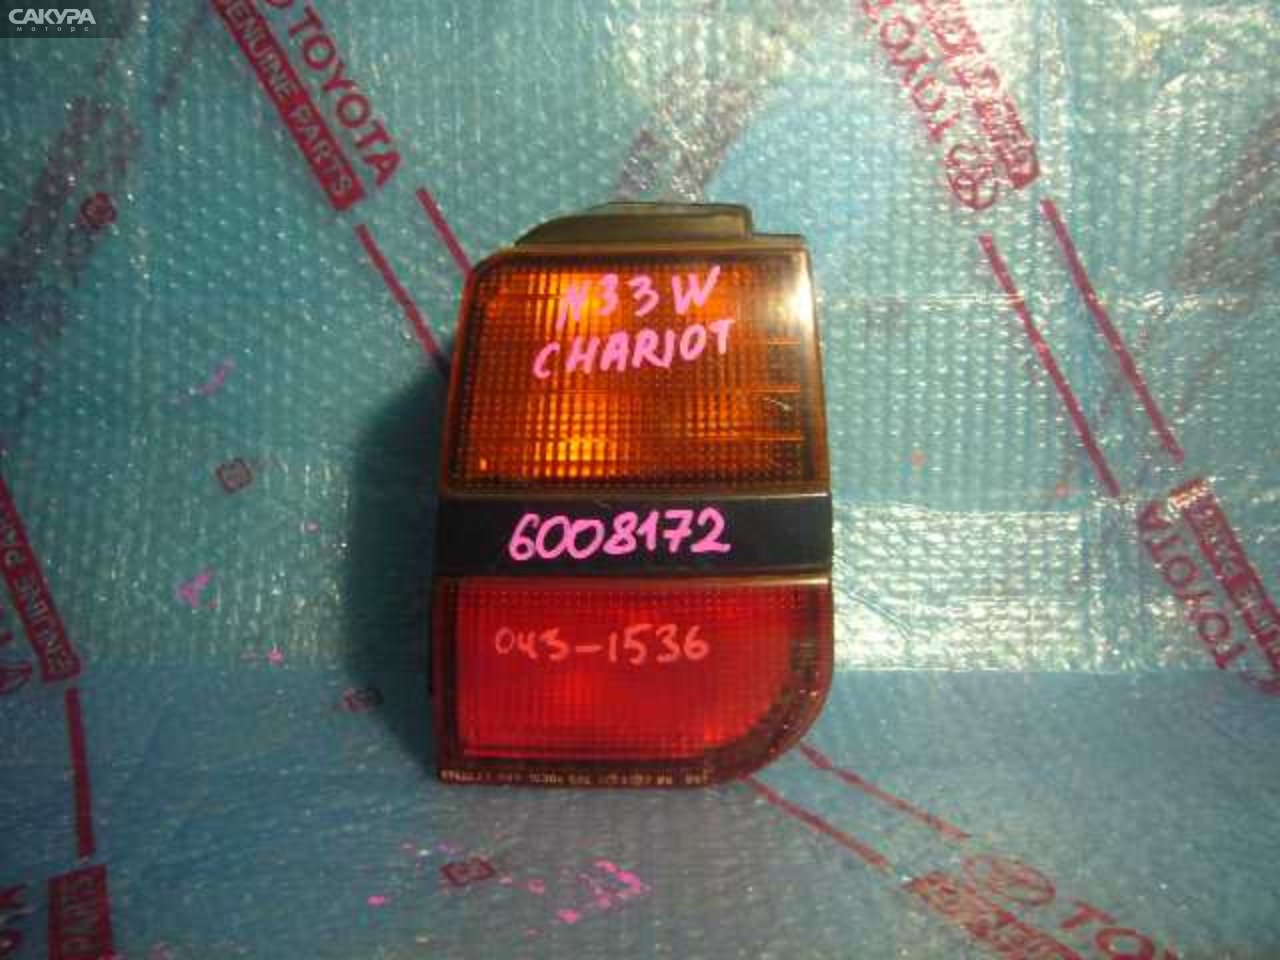 Фонарь стоп-сигнала правый Mitsubishi Chariot N33W 043-1536: купить в Сакура Кемерово.